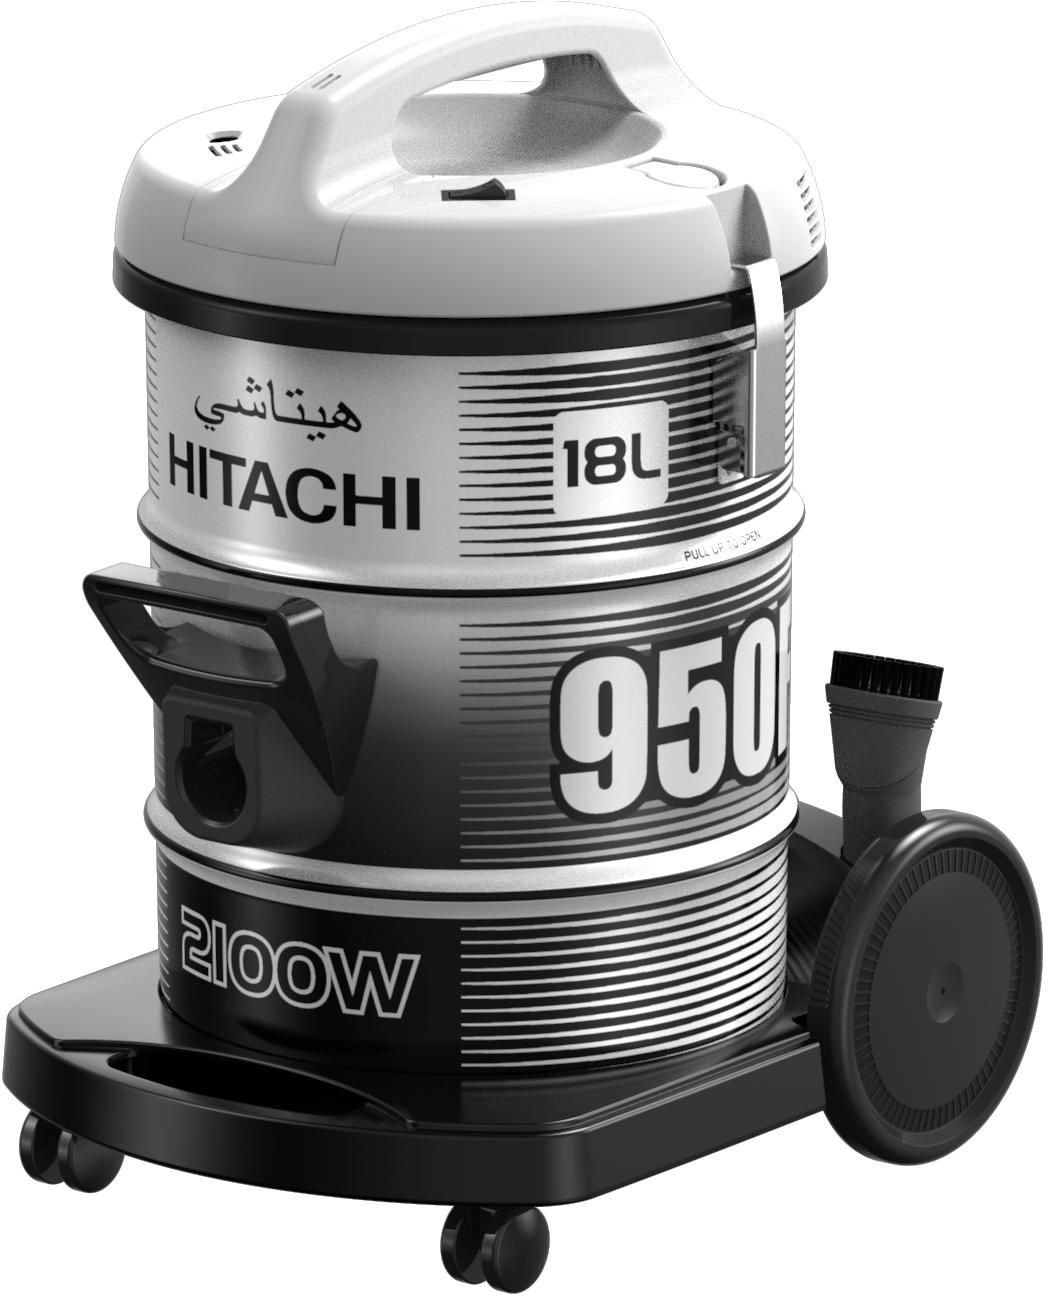 Hitachi Vacuum Cleaner, Drum Type, 18Ltr, 2100W, Platinum Gray